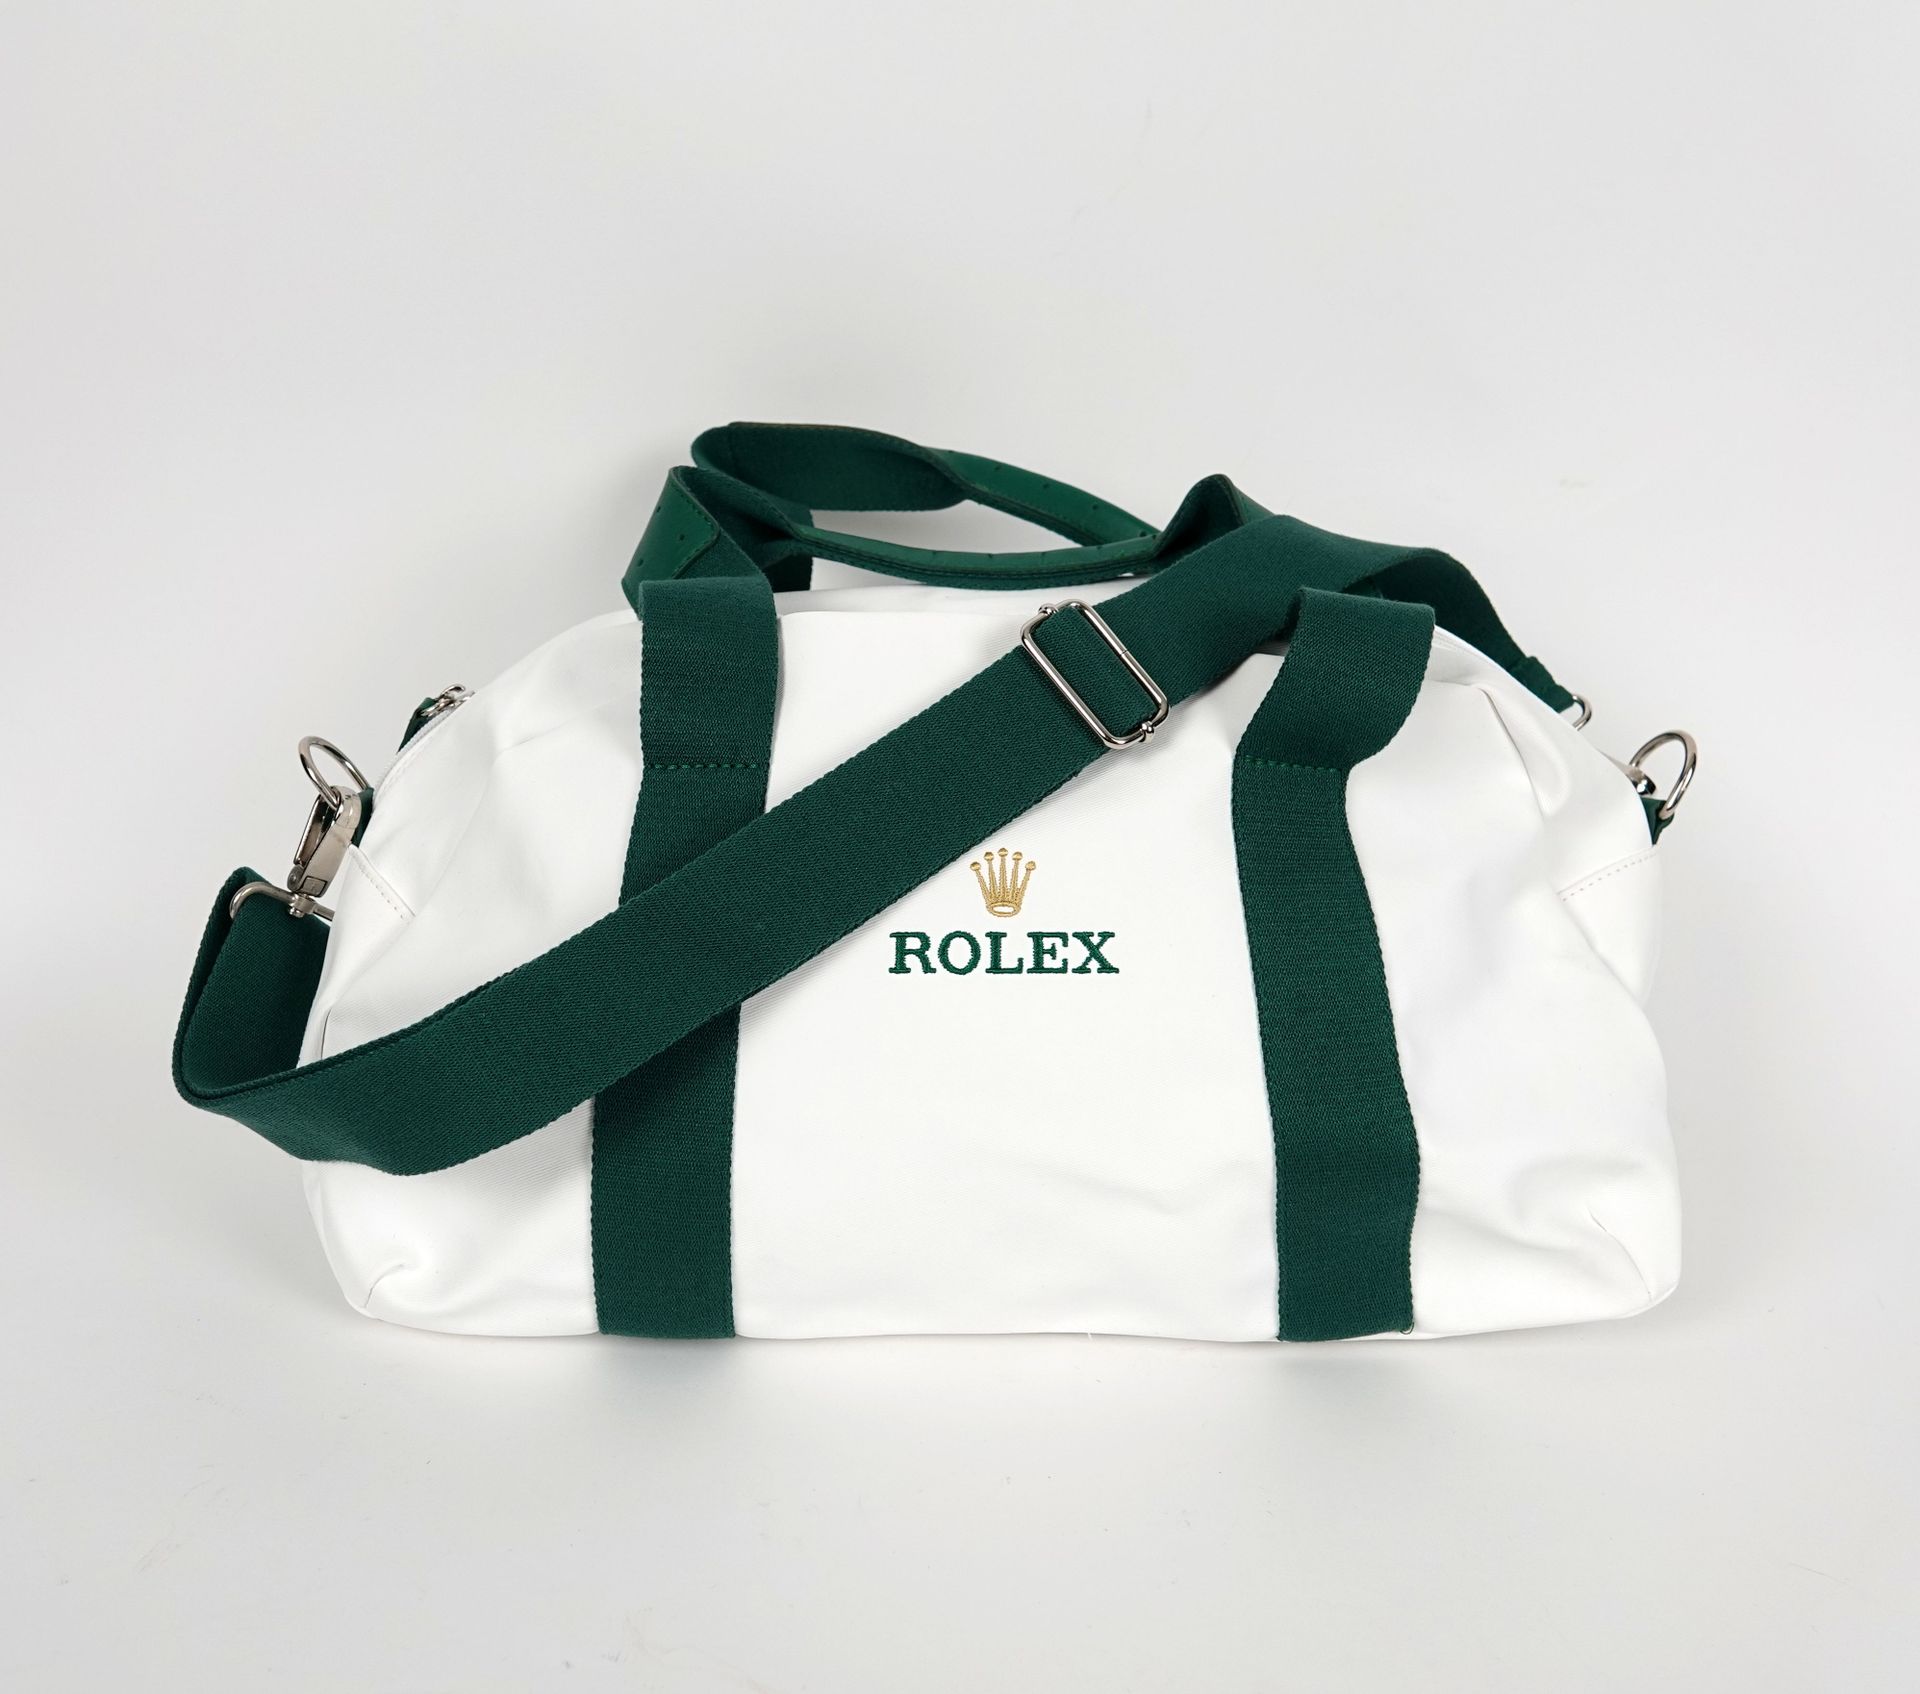 Null Rolex
Eine Sporttasche aus weißem Stoff und grünem Leder mit der Unterschri&hellip;